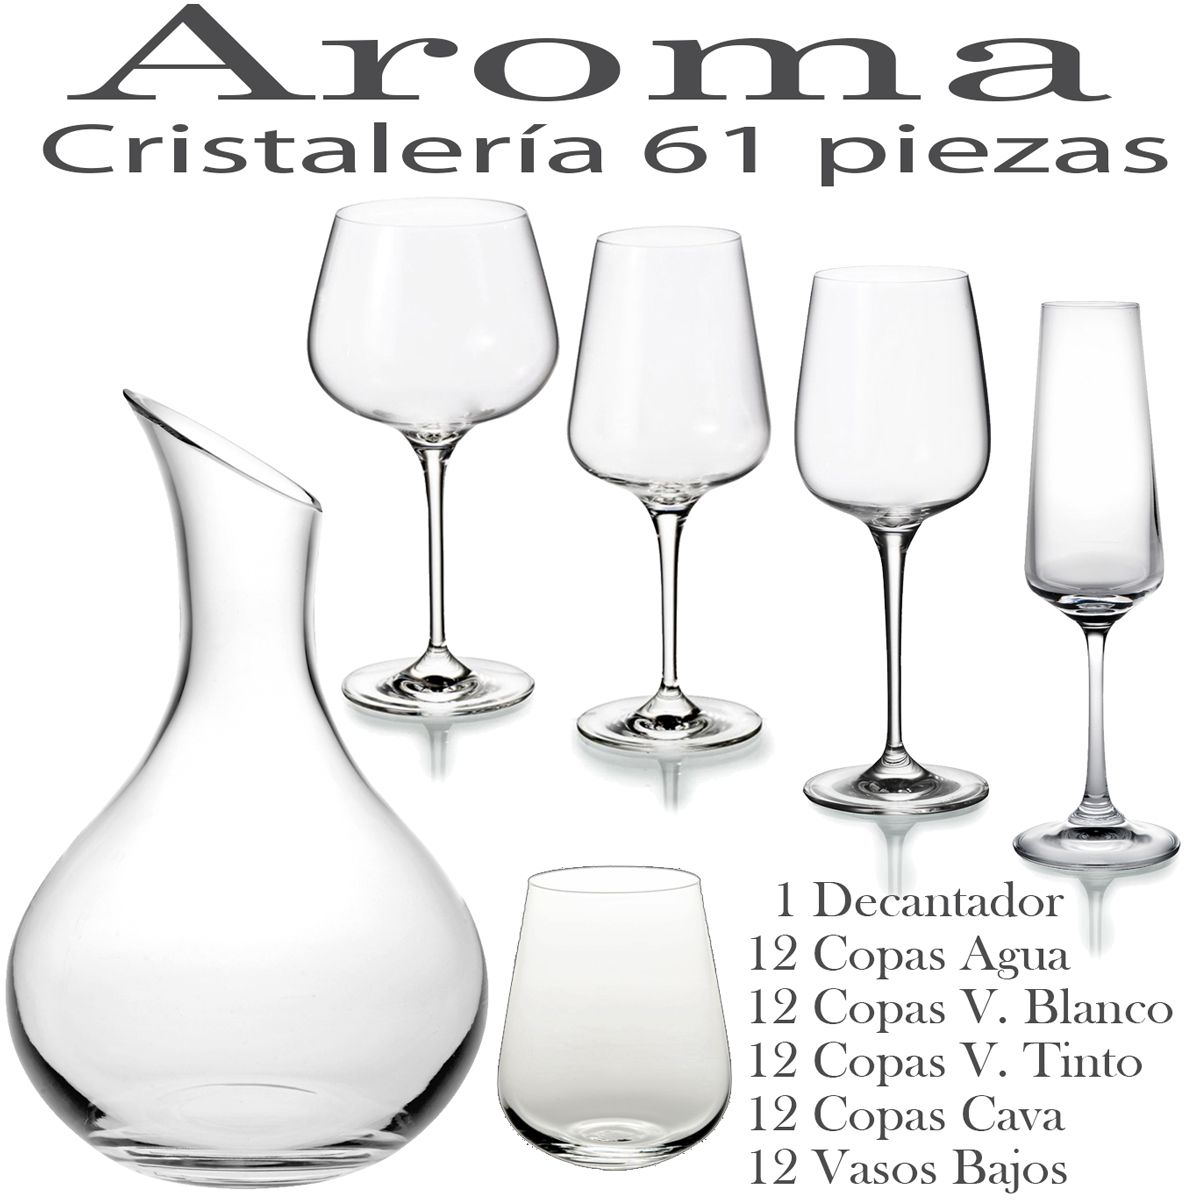 va a decidir promesa Penetración Cristalería barata 61 piezas Aroma Vista Alegre - Copas + Vasos + Decantador